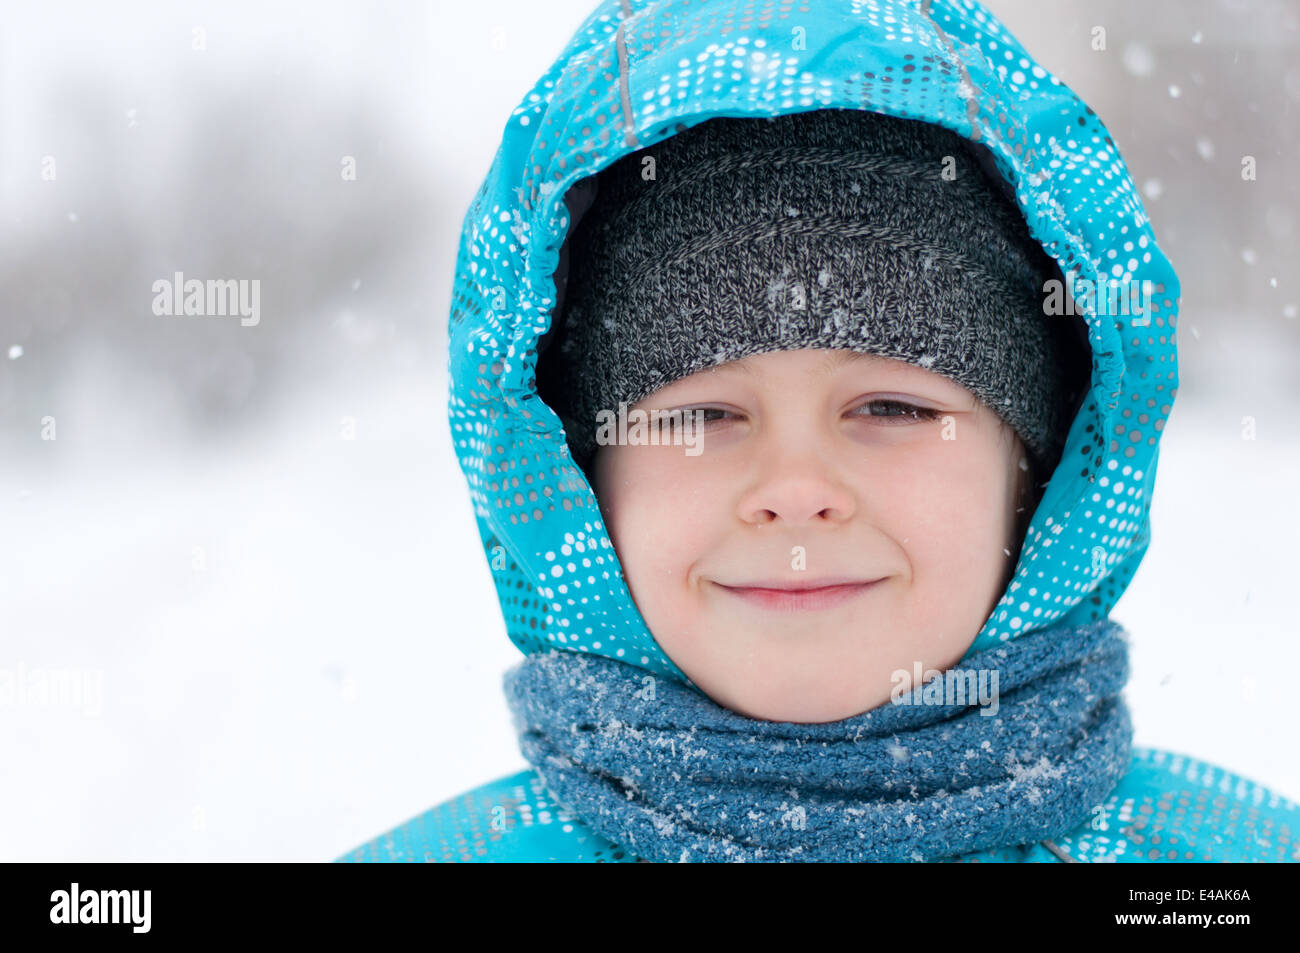 Bambino ritratto uno a otto anni abbigliamento invernale blizzard gelo della neve down jacket cofano sciarpa blu freddo giorno guarda a destra la Russia n. Foto Stock